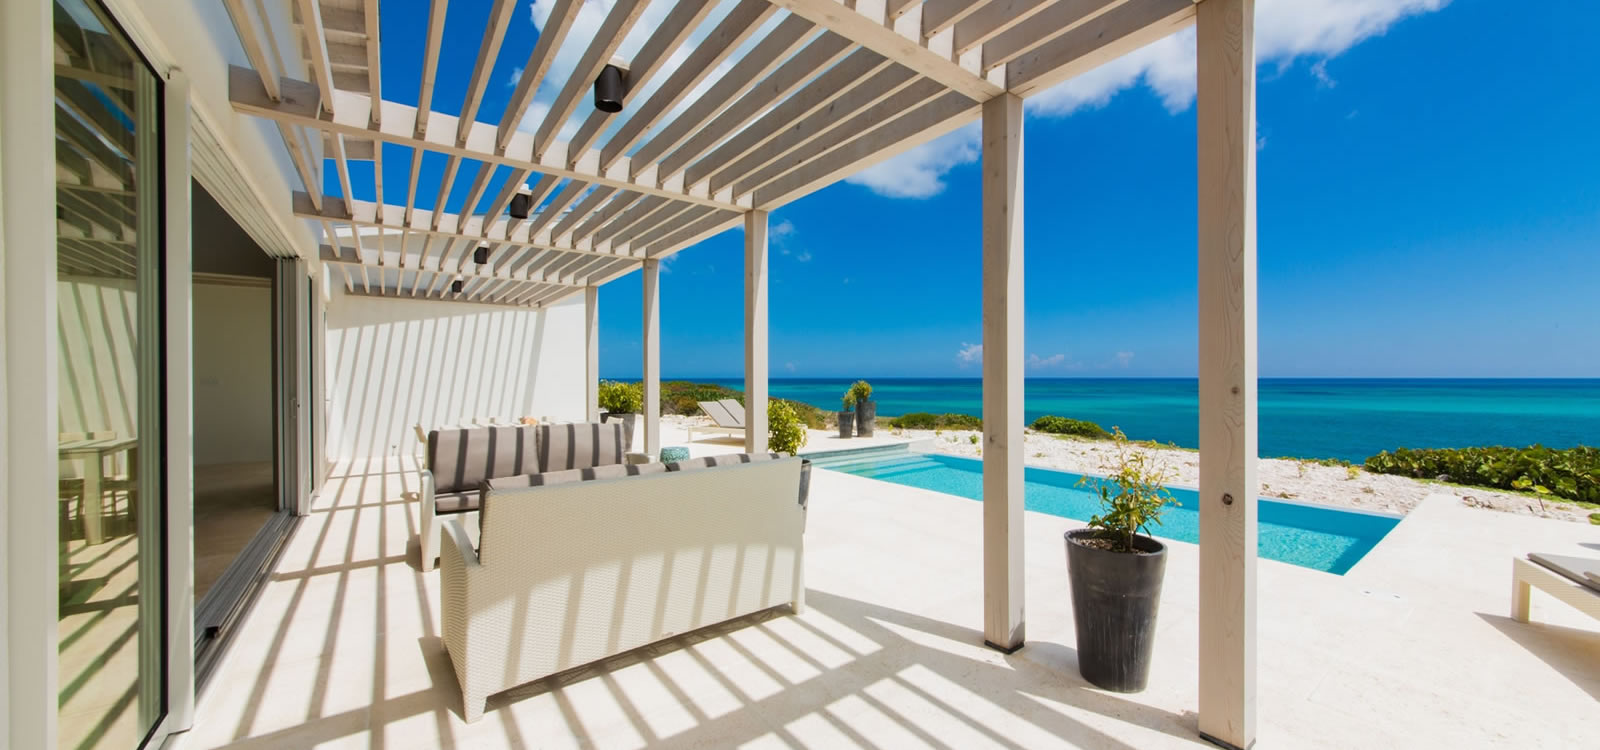 3 Bedroom Beachfront Villas for Sale, South Caicos, Turks & Caicos ...